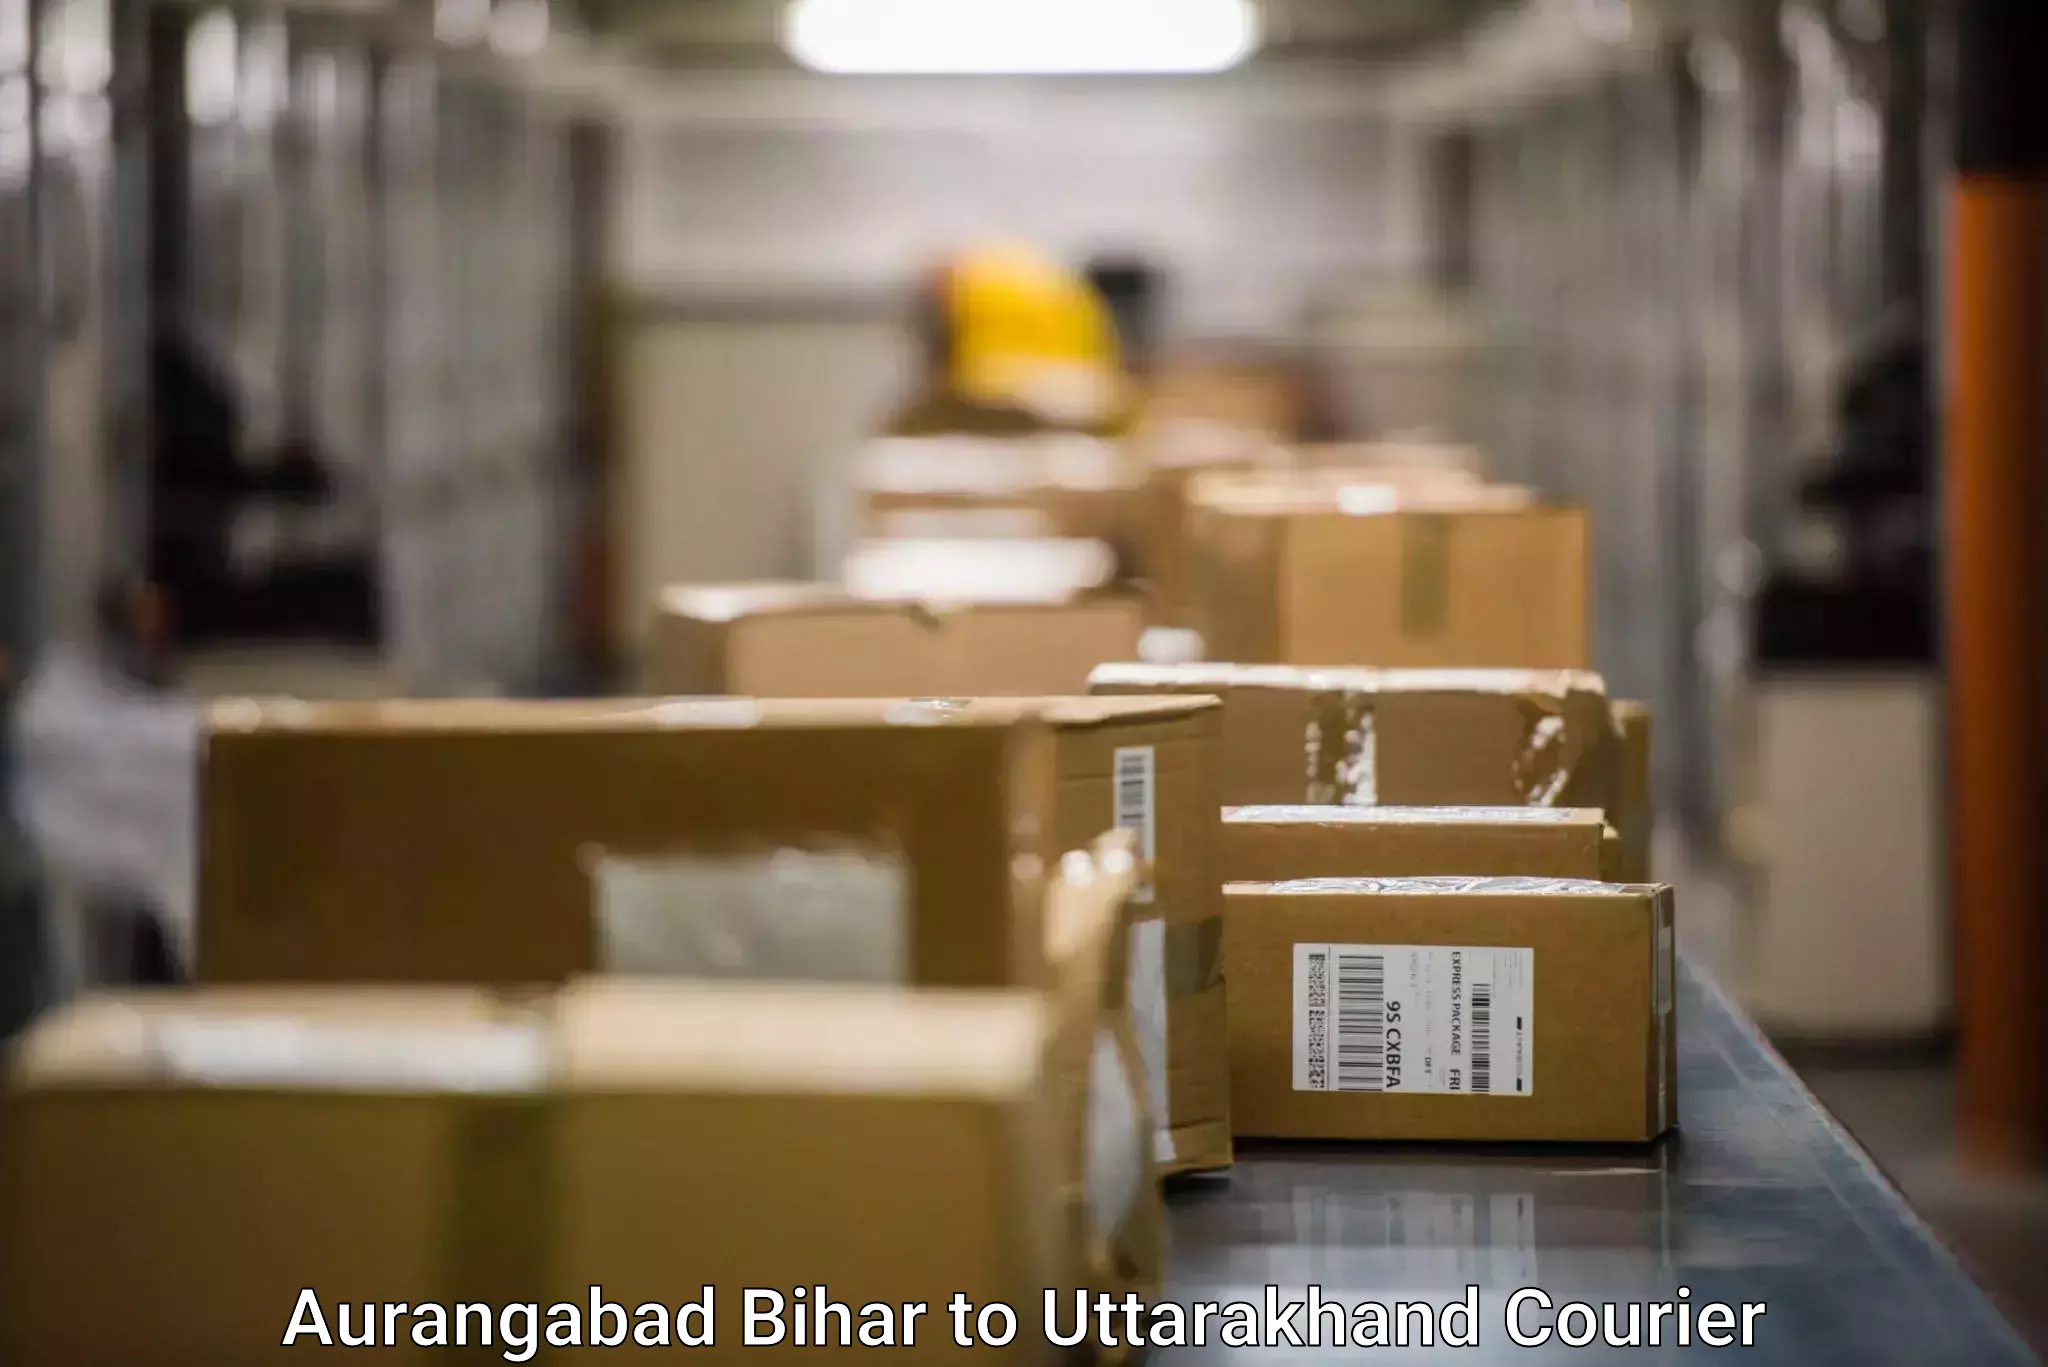 Door-to-door freight service Aurangabad Bihar to Dwarahat